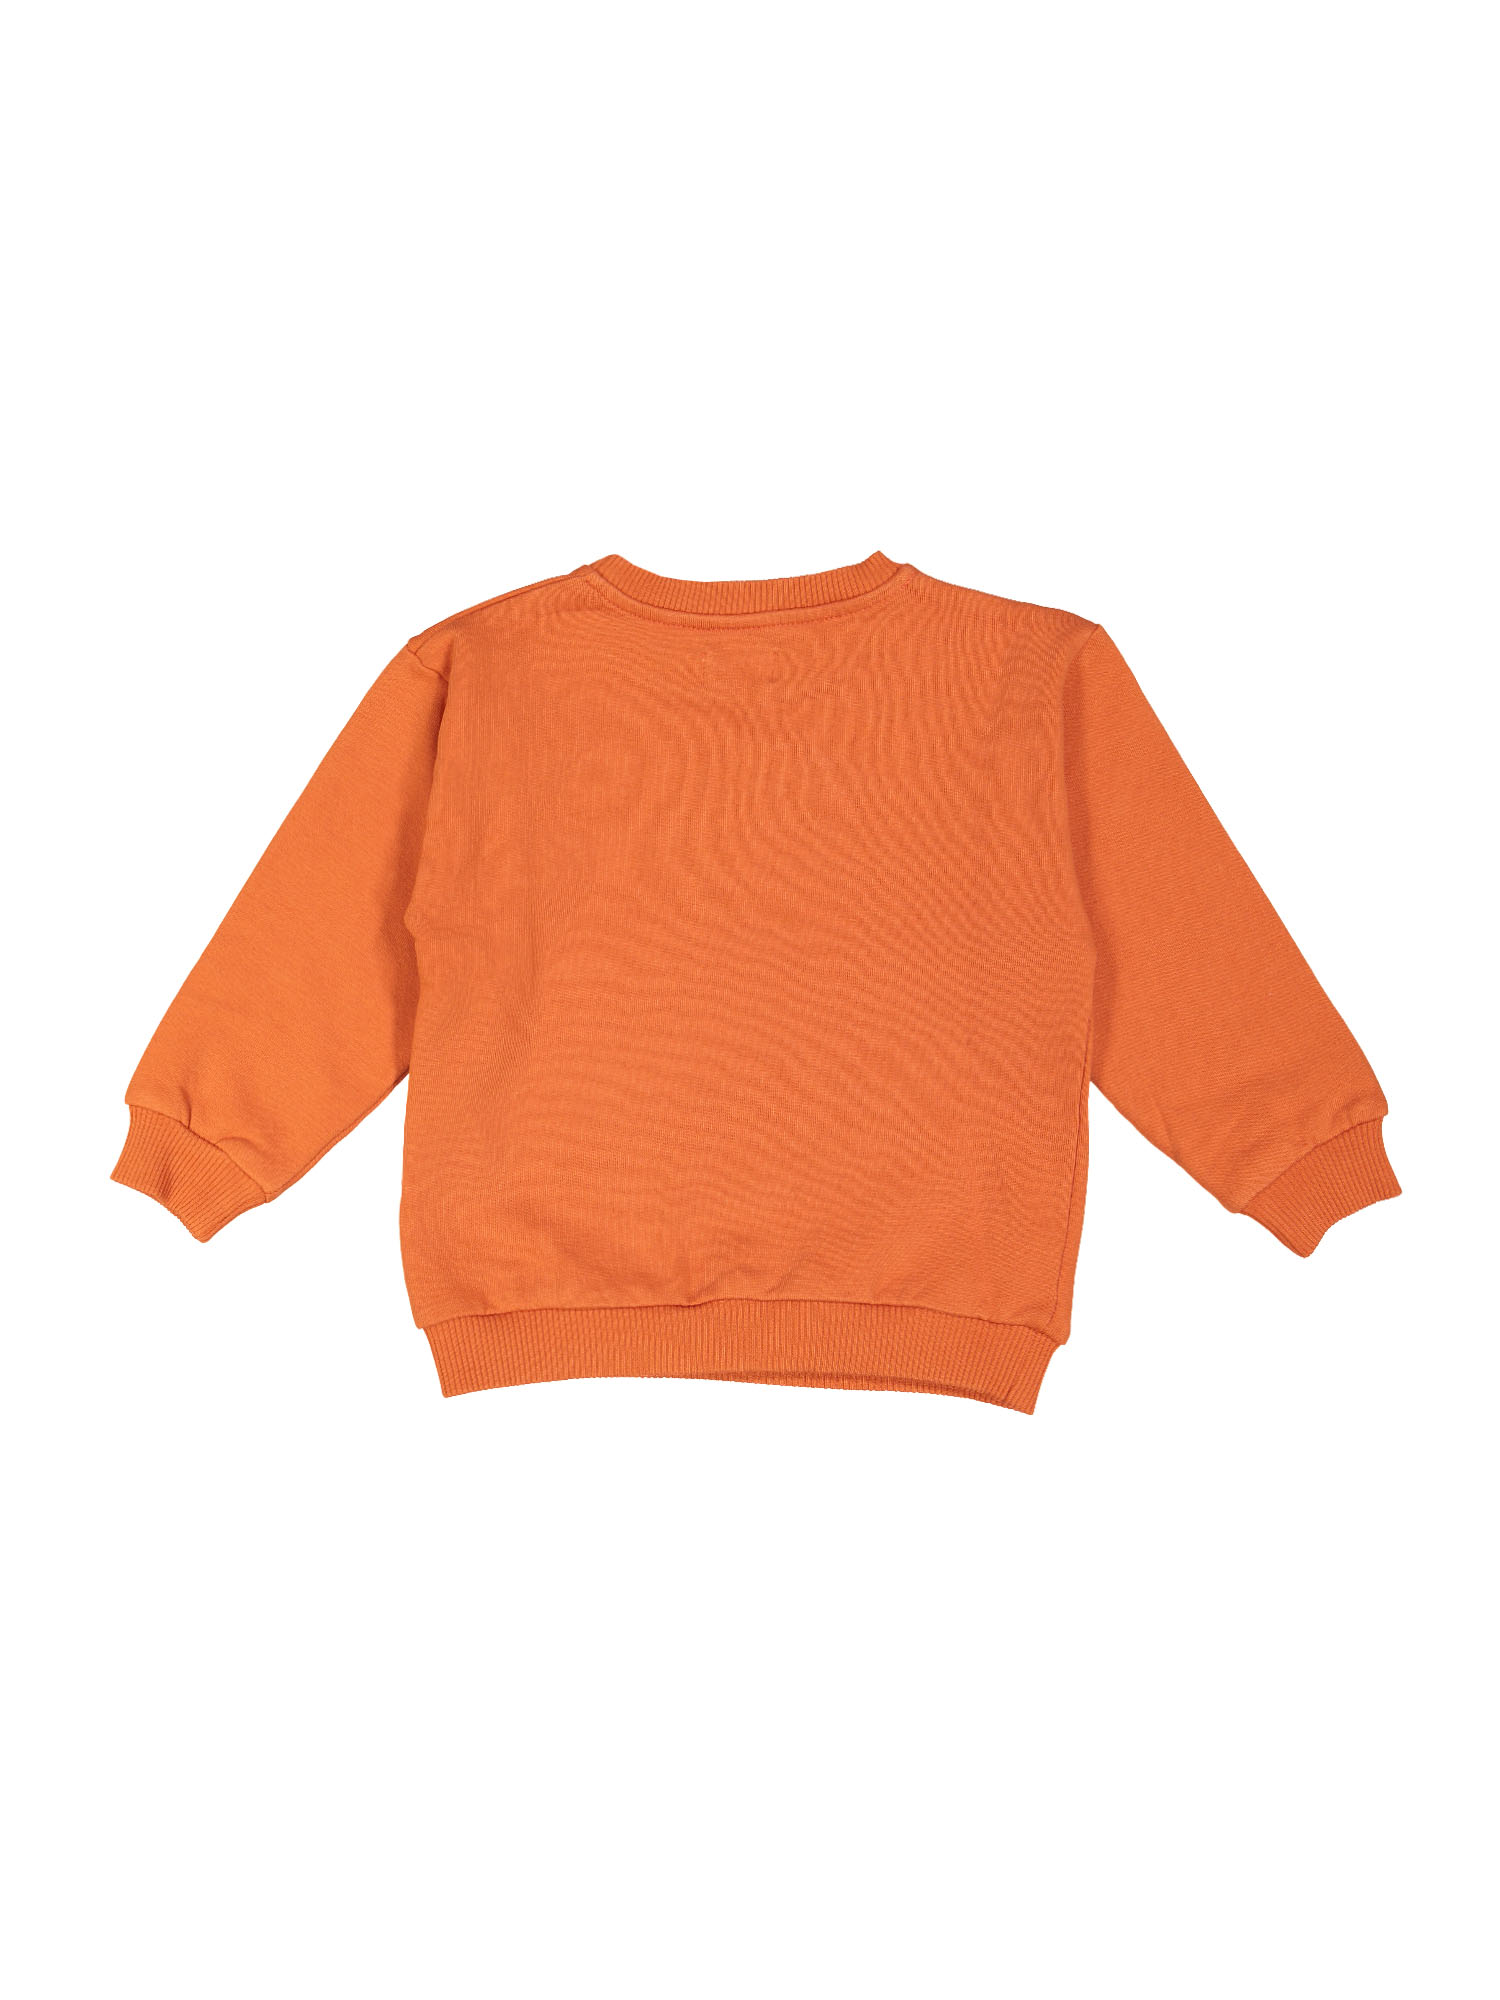 sweater boogie woogie oranje 02j